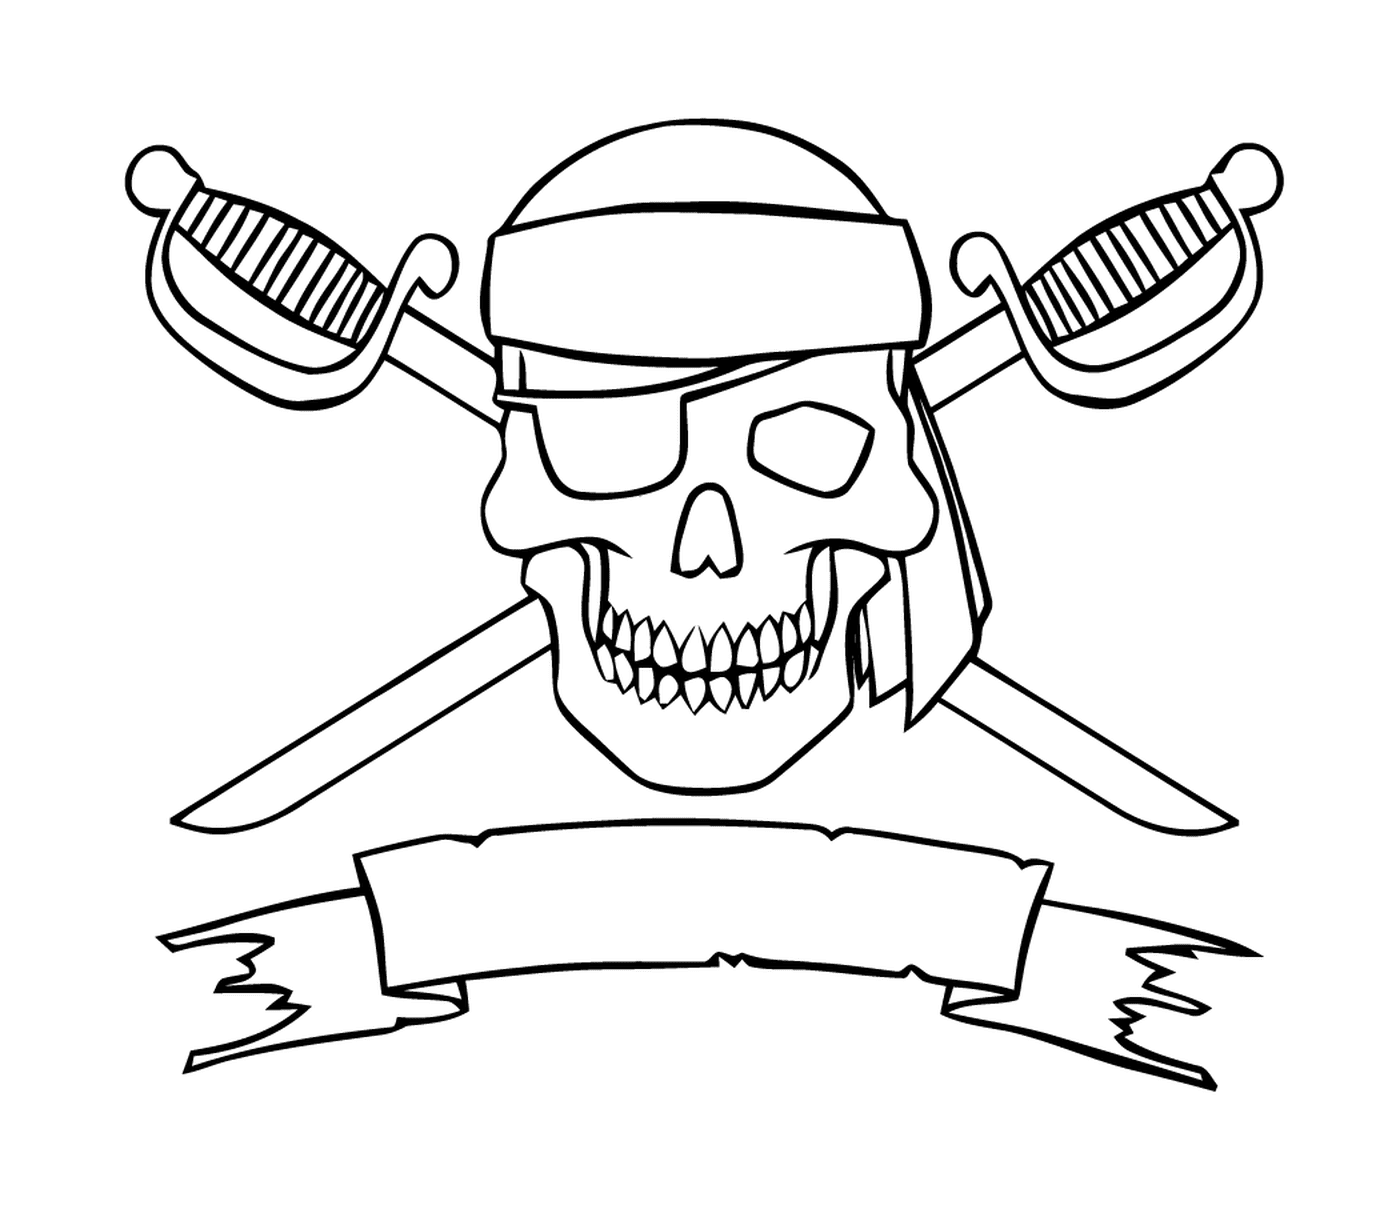  Logo pirata spaventoso, spade incrociate 